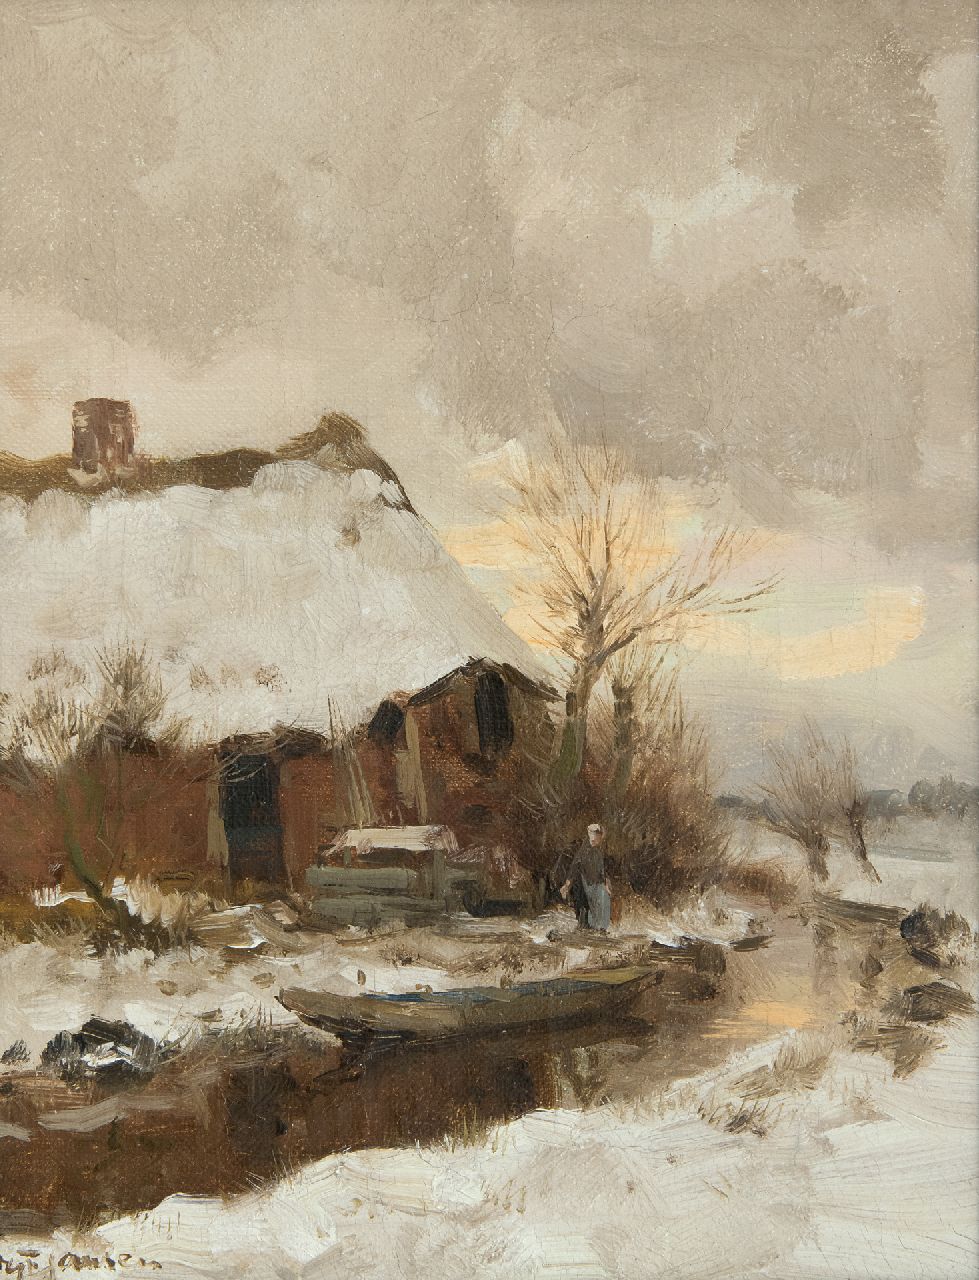 Jansen W.G.F.  | 'Willem' George Frederik Jansen, Boerderijtje in de sneeuw, olieverf op doek 30,5 x 24,5 cm, gesigneerd linksonder